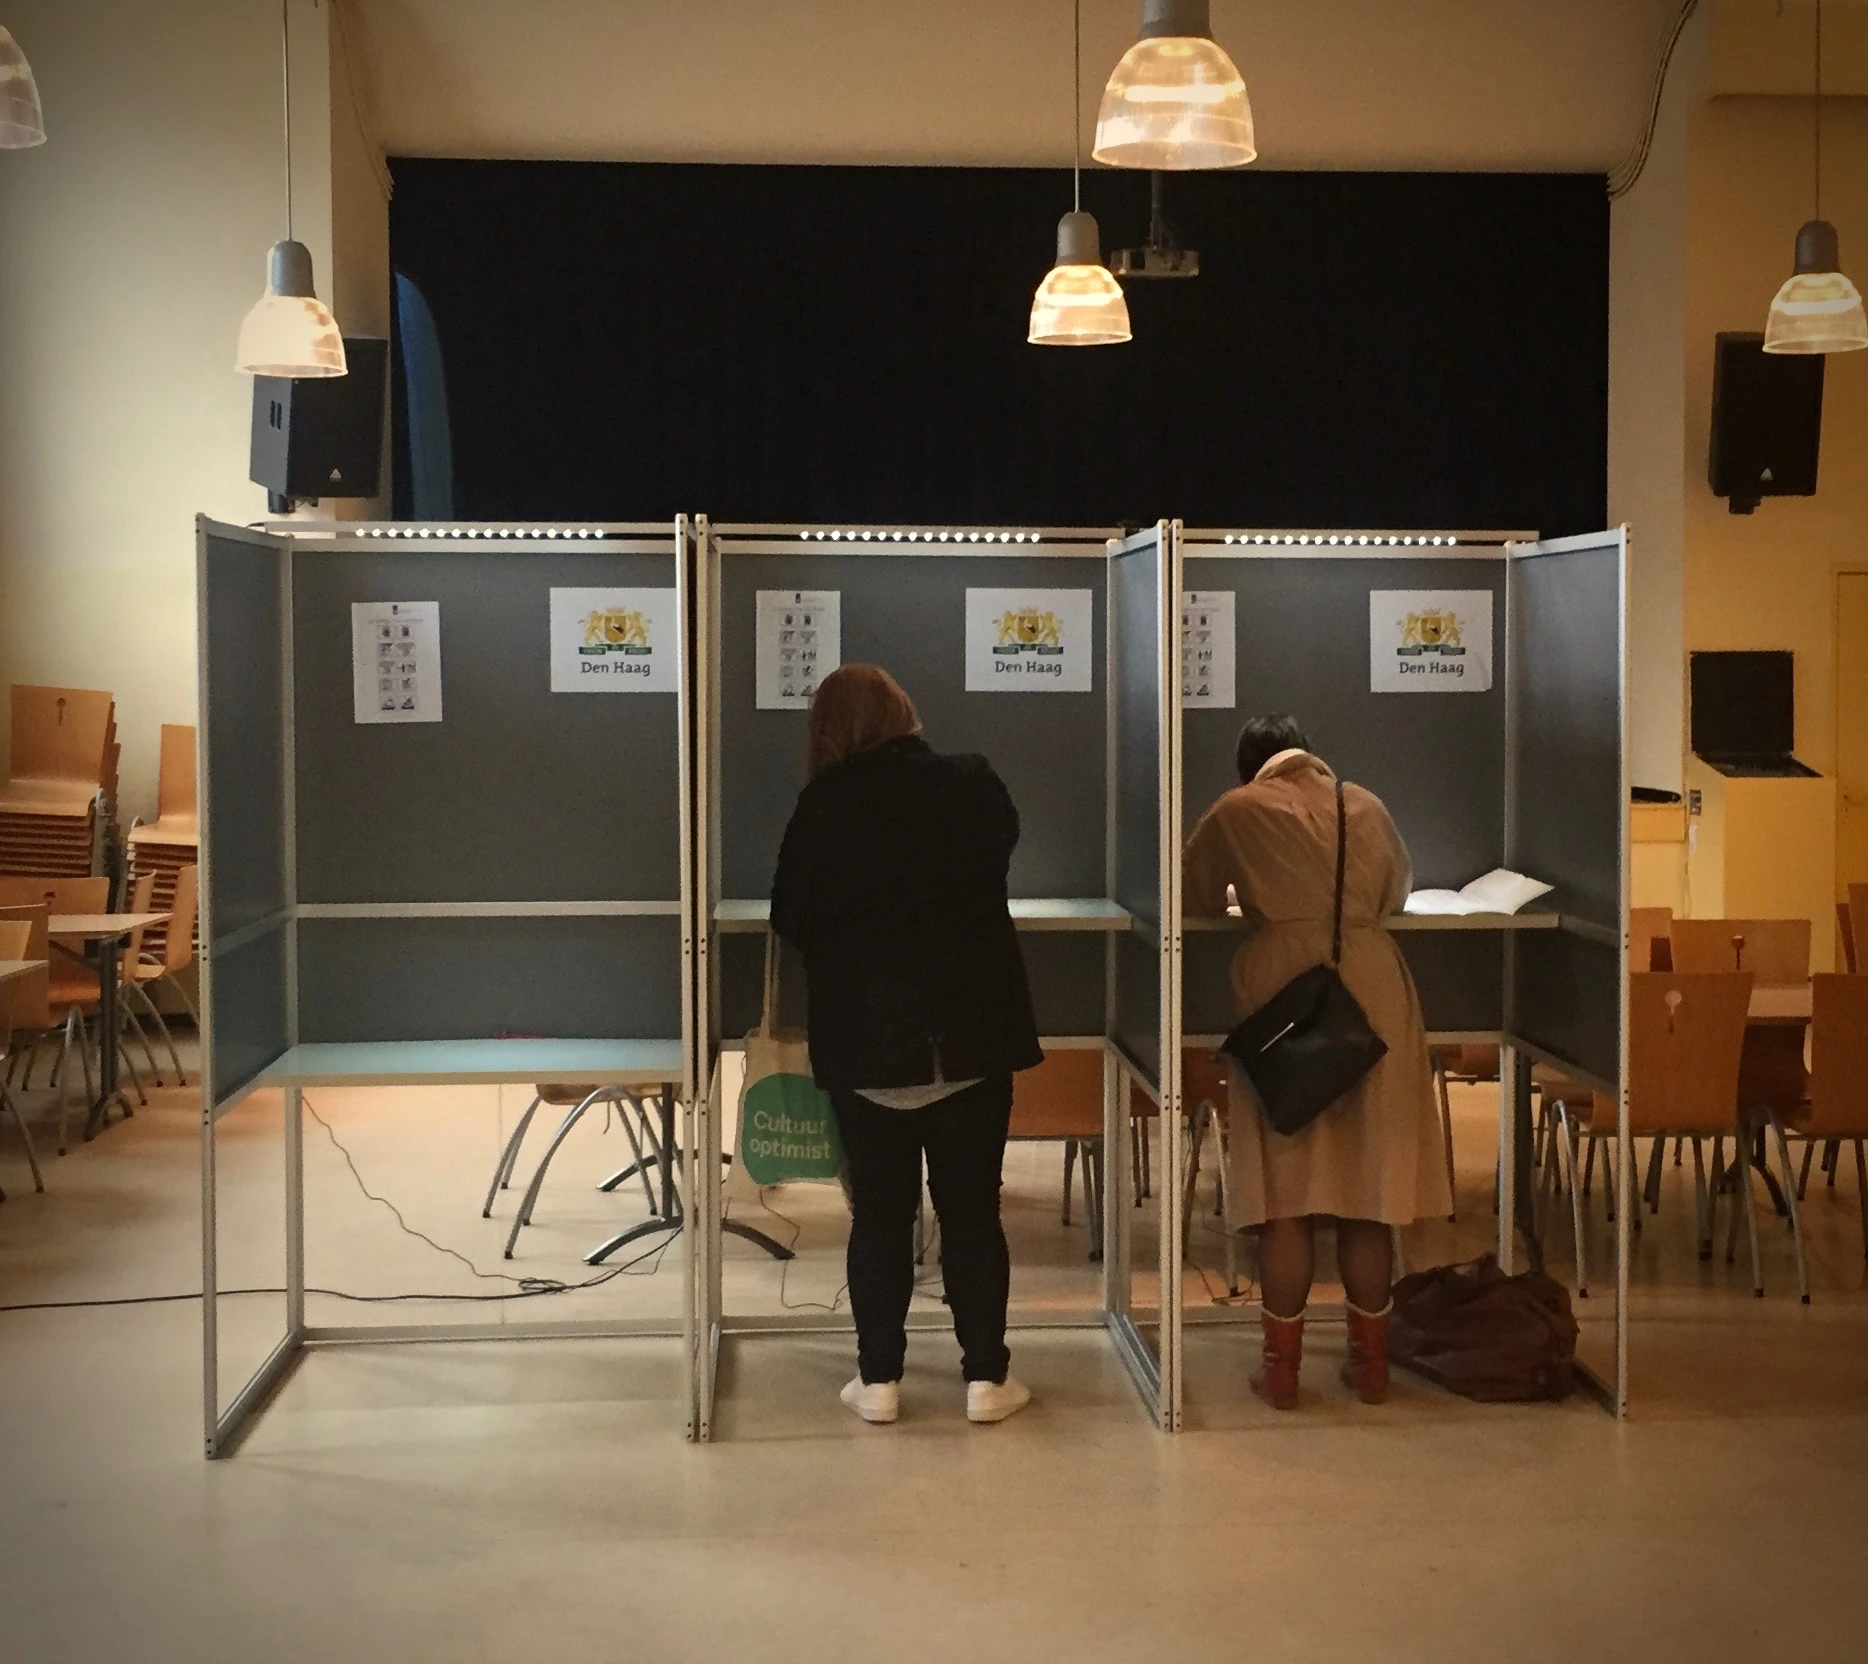 در ایام انتخابات 2 نفر در اتاق رای گیری رای می دهند.